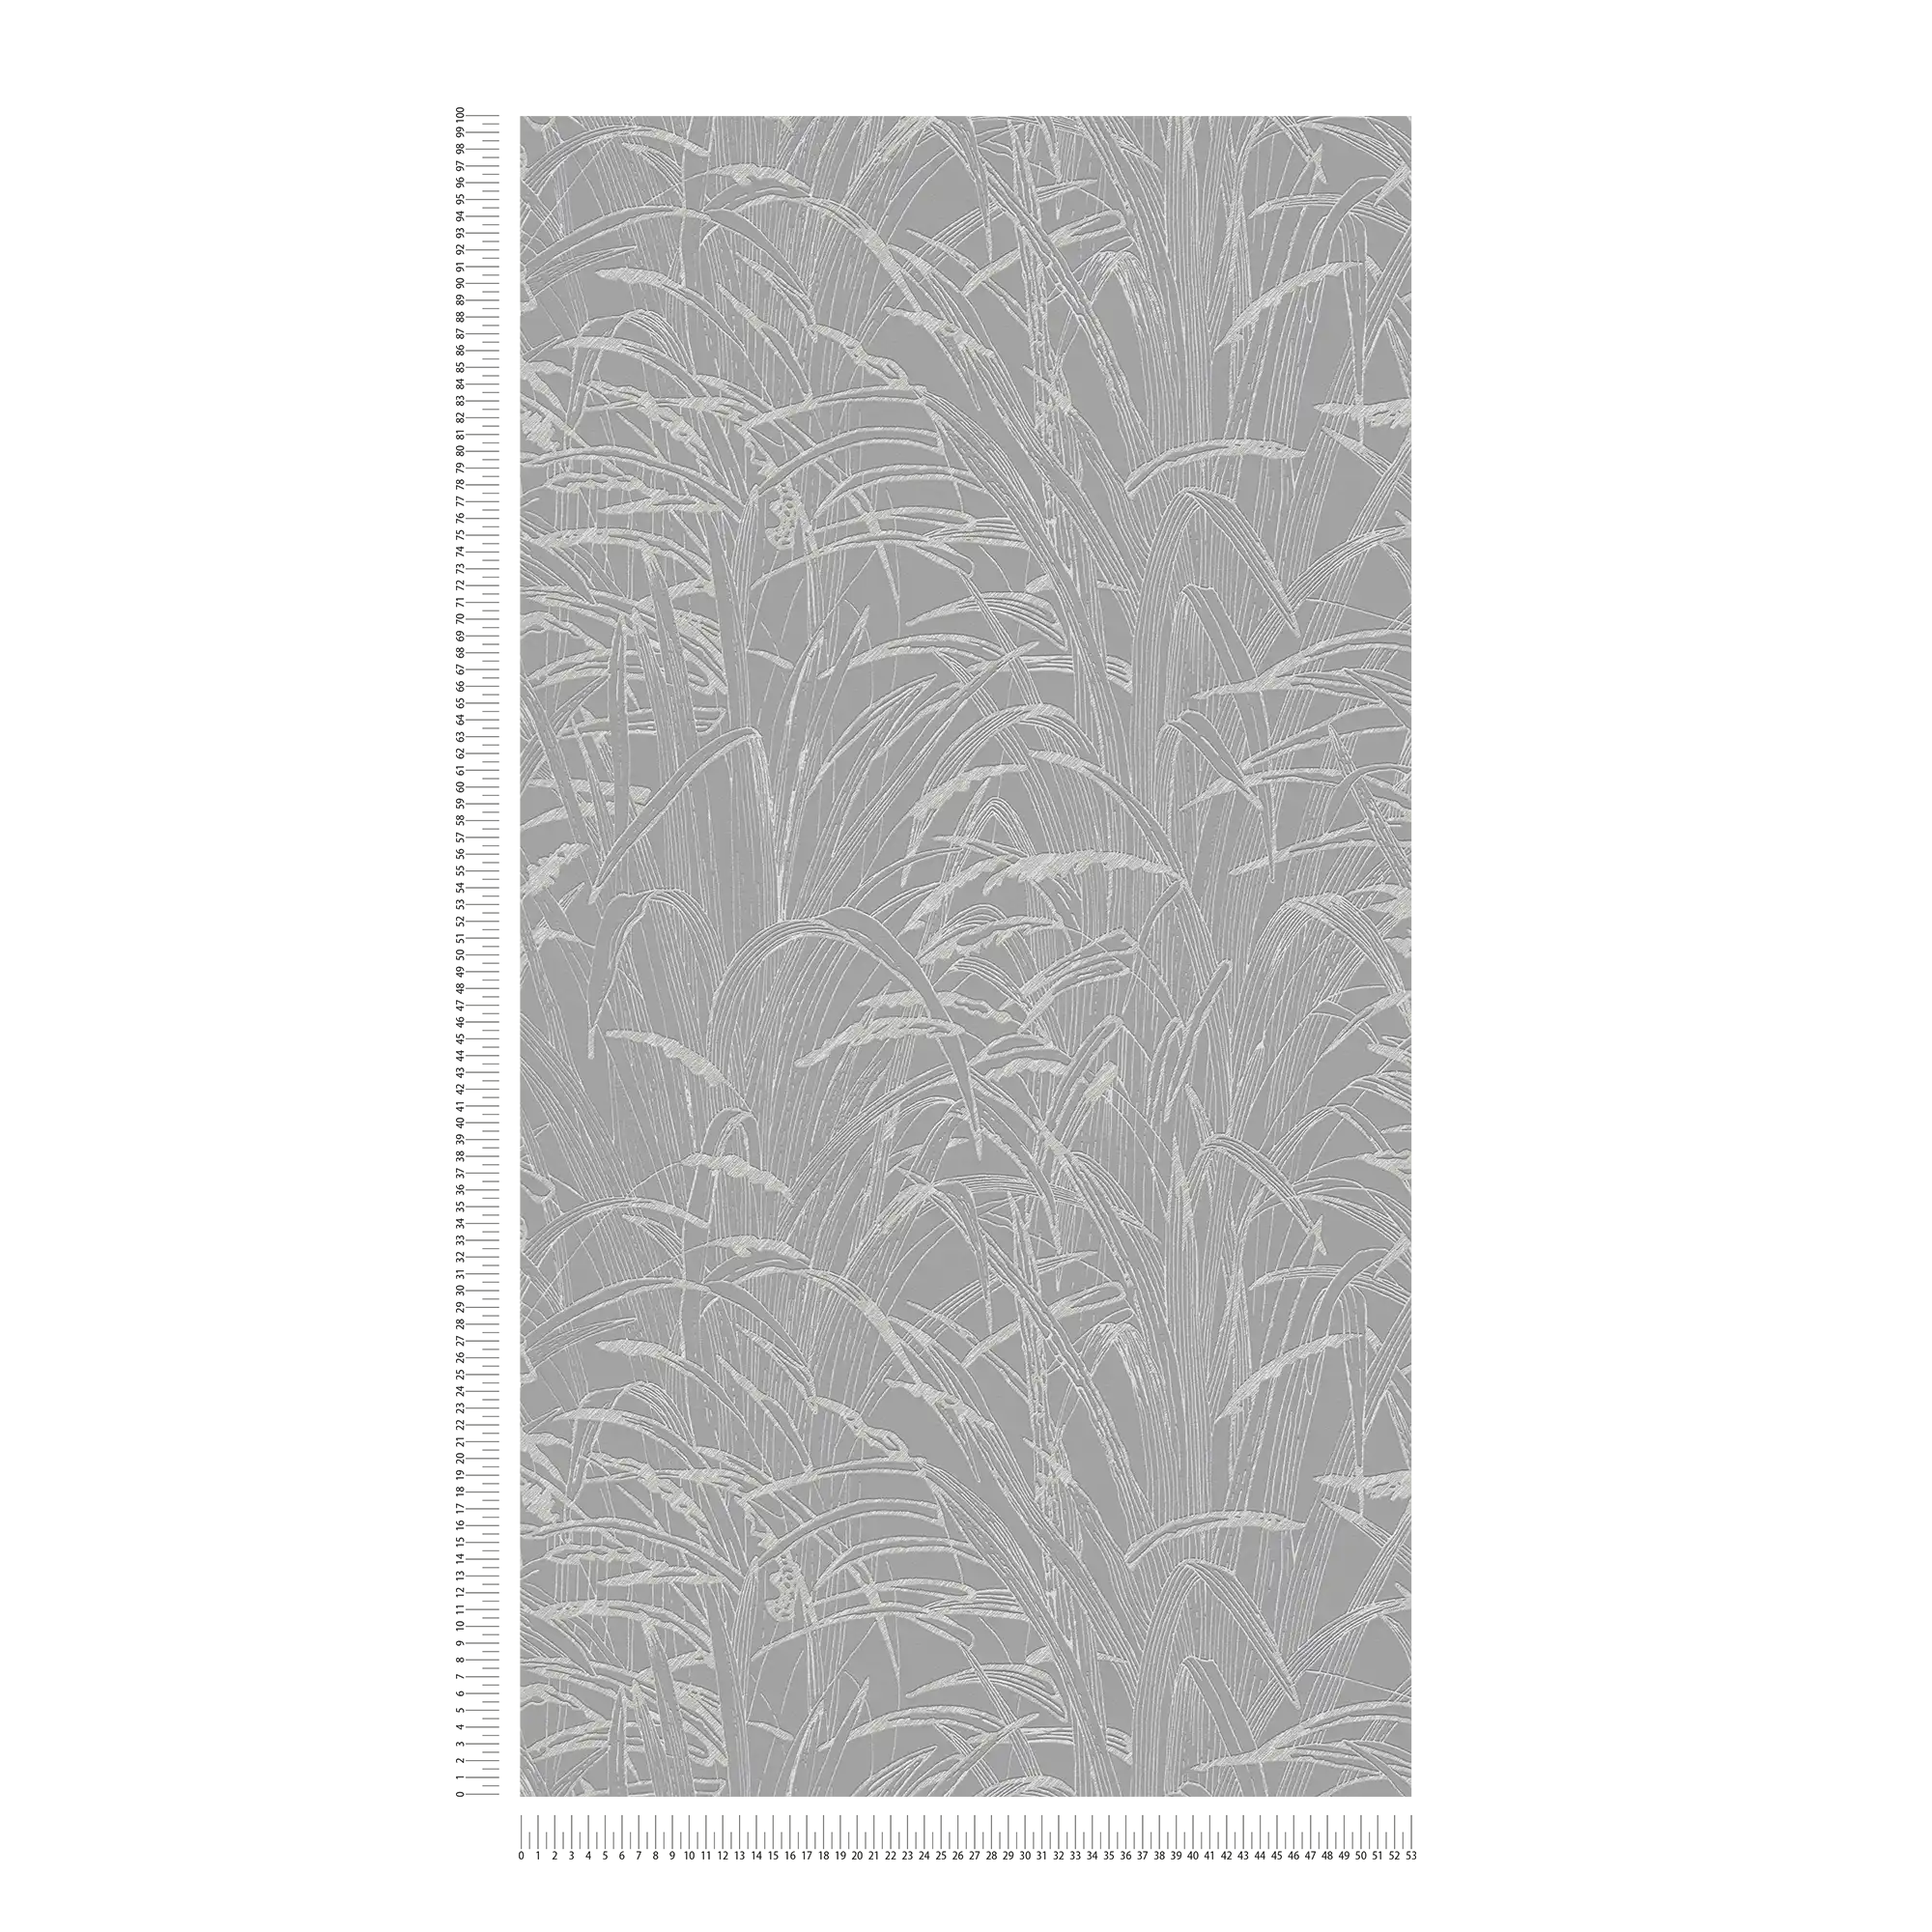             Natuurbehang rietbladeren met metallic kleur - grijs
        